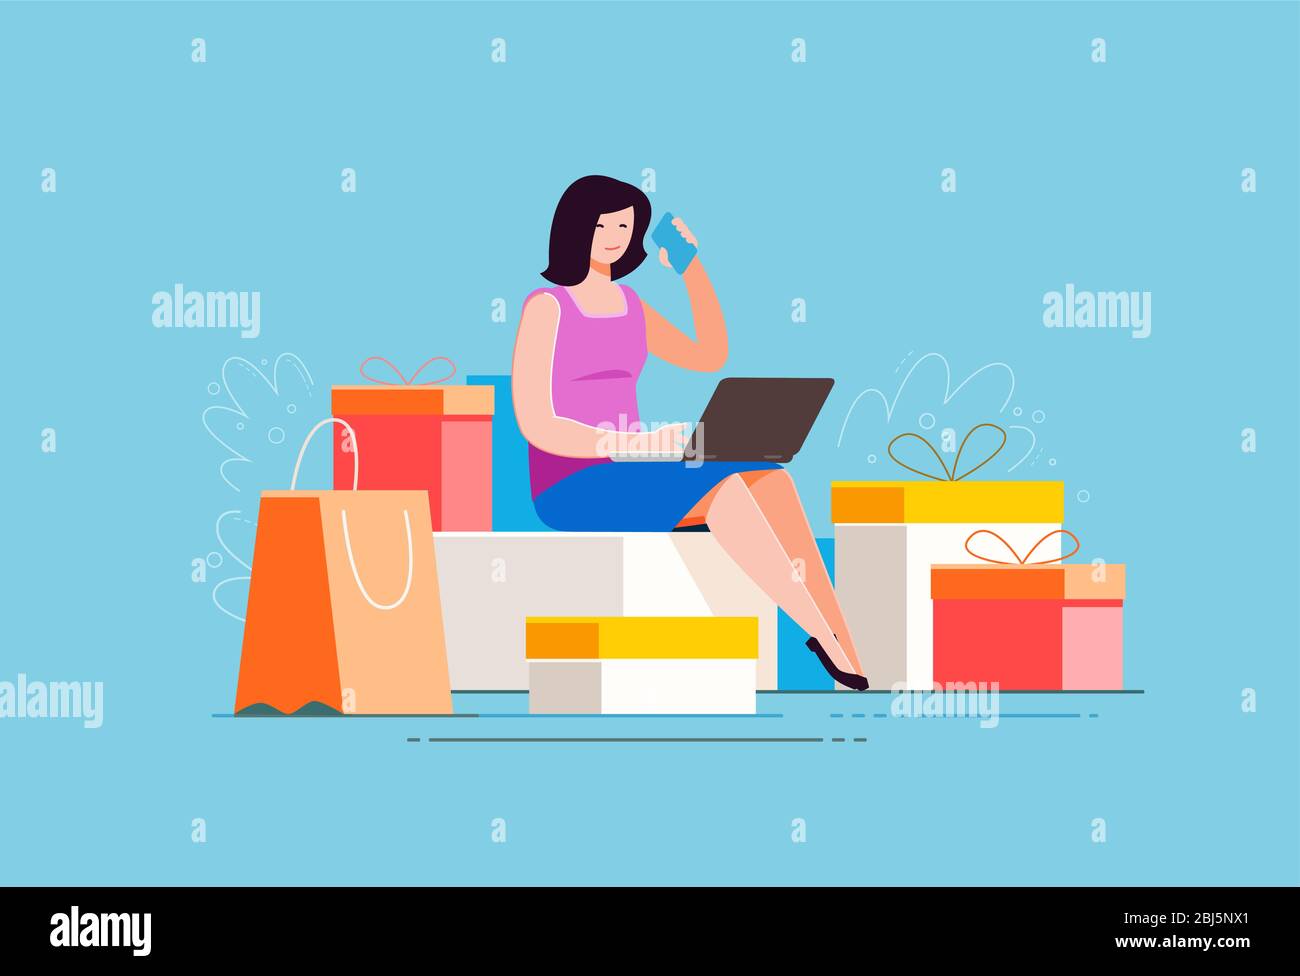 Acquisto di beni tramite il negozio online. Shopping, illustrazione vettoriale della moda Illustrazione Vettoriale